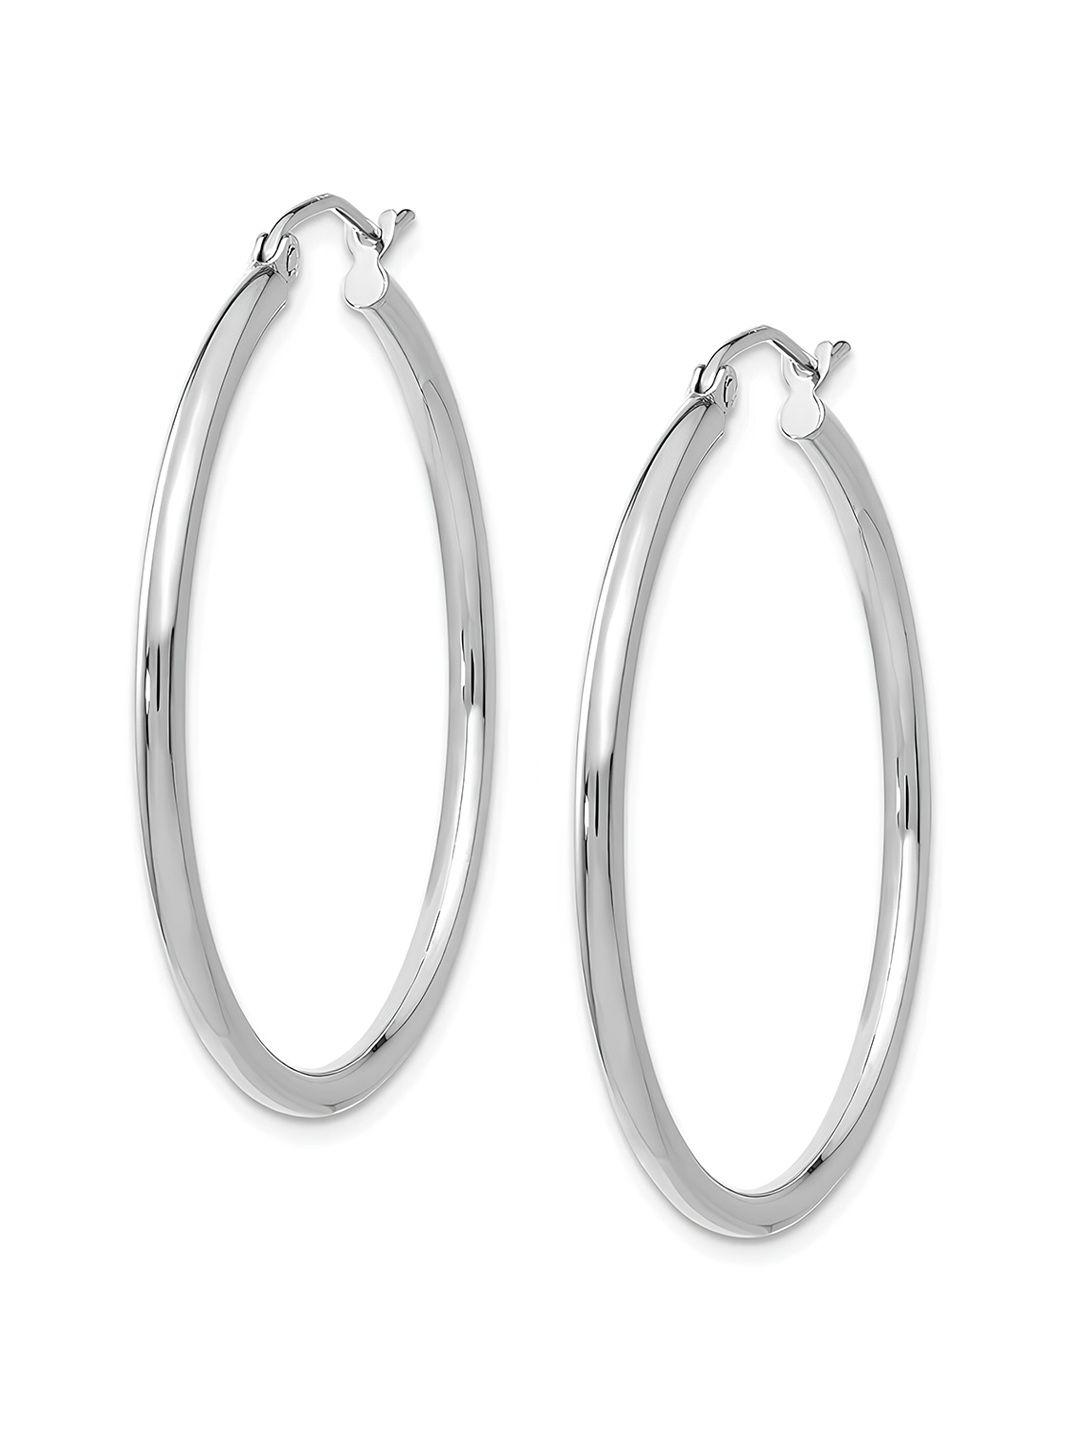 karishma kreations stainless steel contemporary hoop earrings